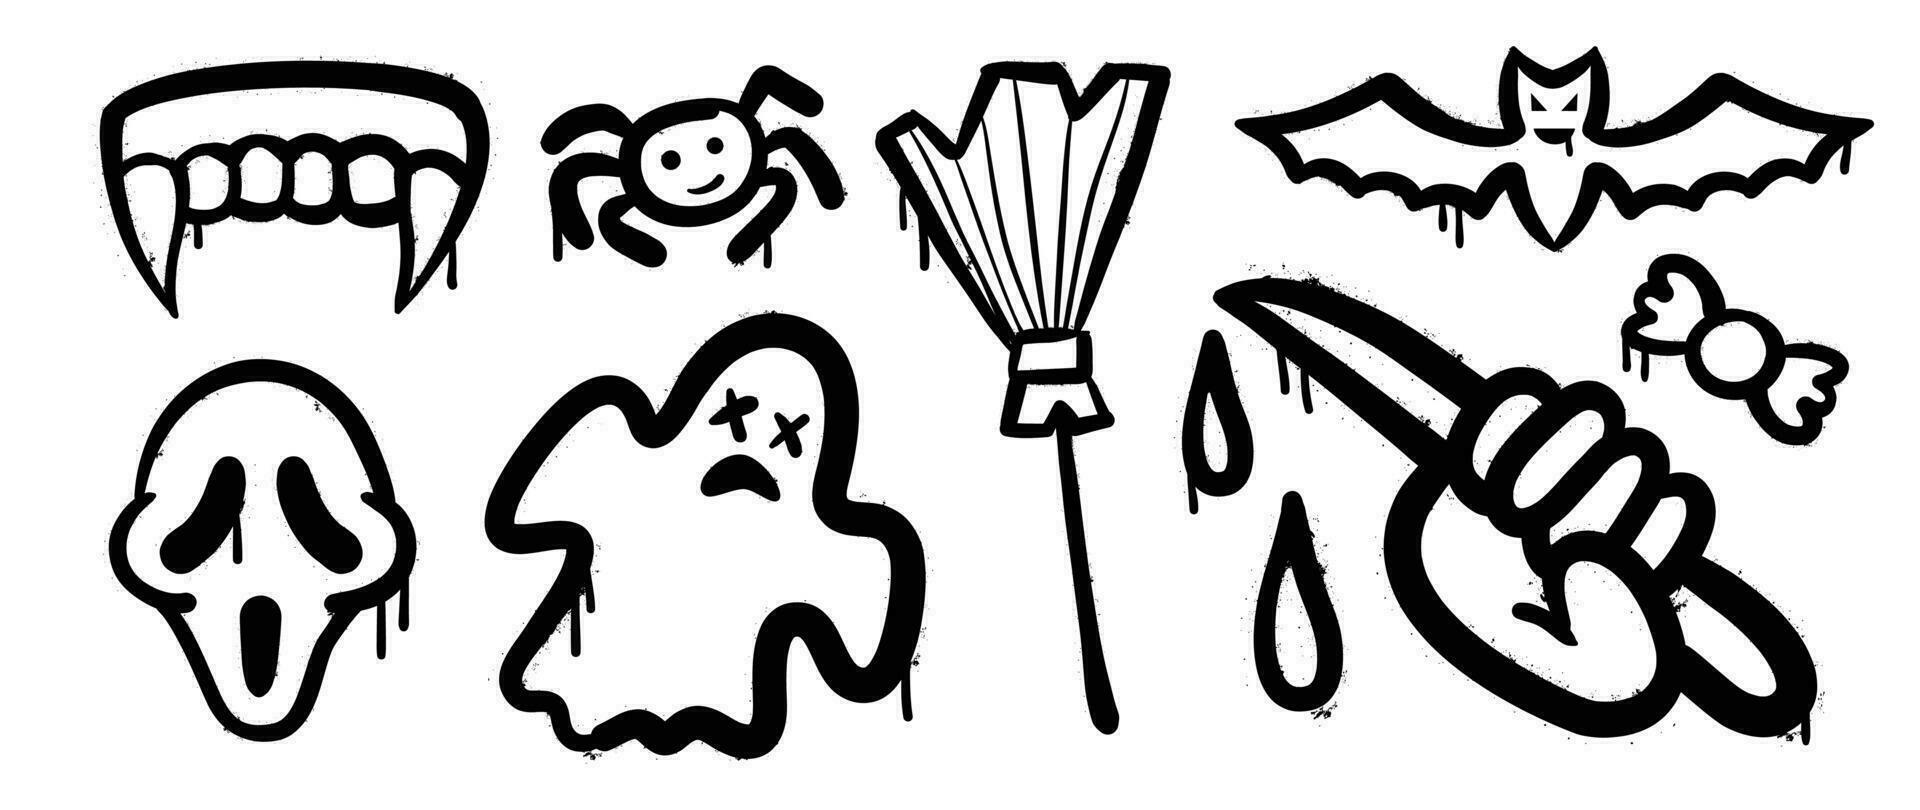 uppsättning av graffiti spray mönster. samling av halloween symboler, spöke, skalle, godis, fladdermus, kniv, Spindel med spray textur. element på vit bakgrund för klistermärke, baner, dekoration, gata konst. vektor